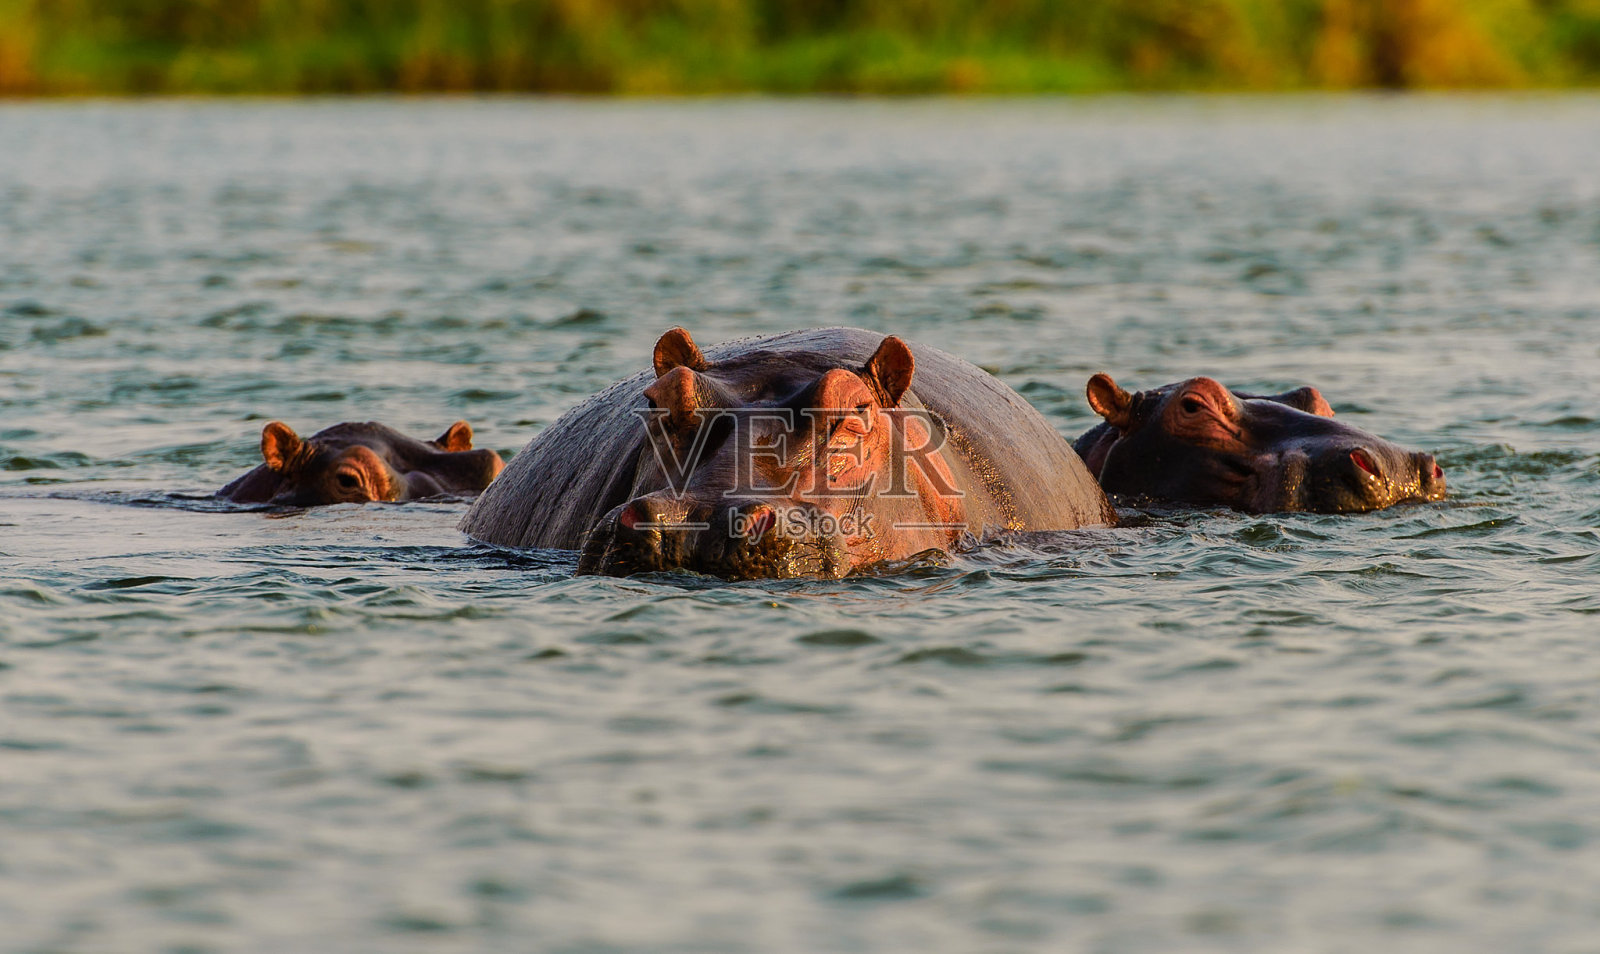 赞比亚赞比西河上的河马照片摄影图片